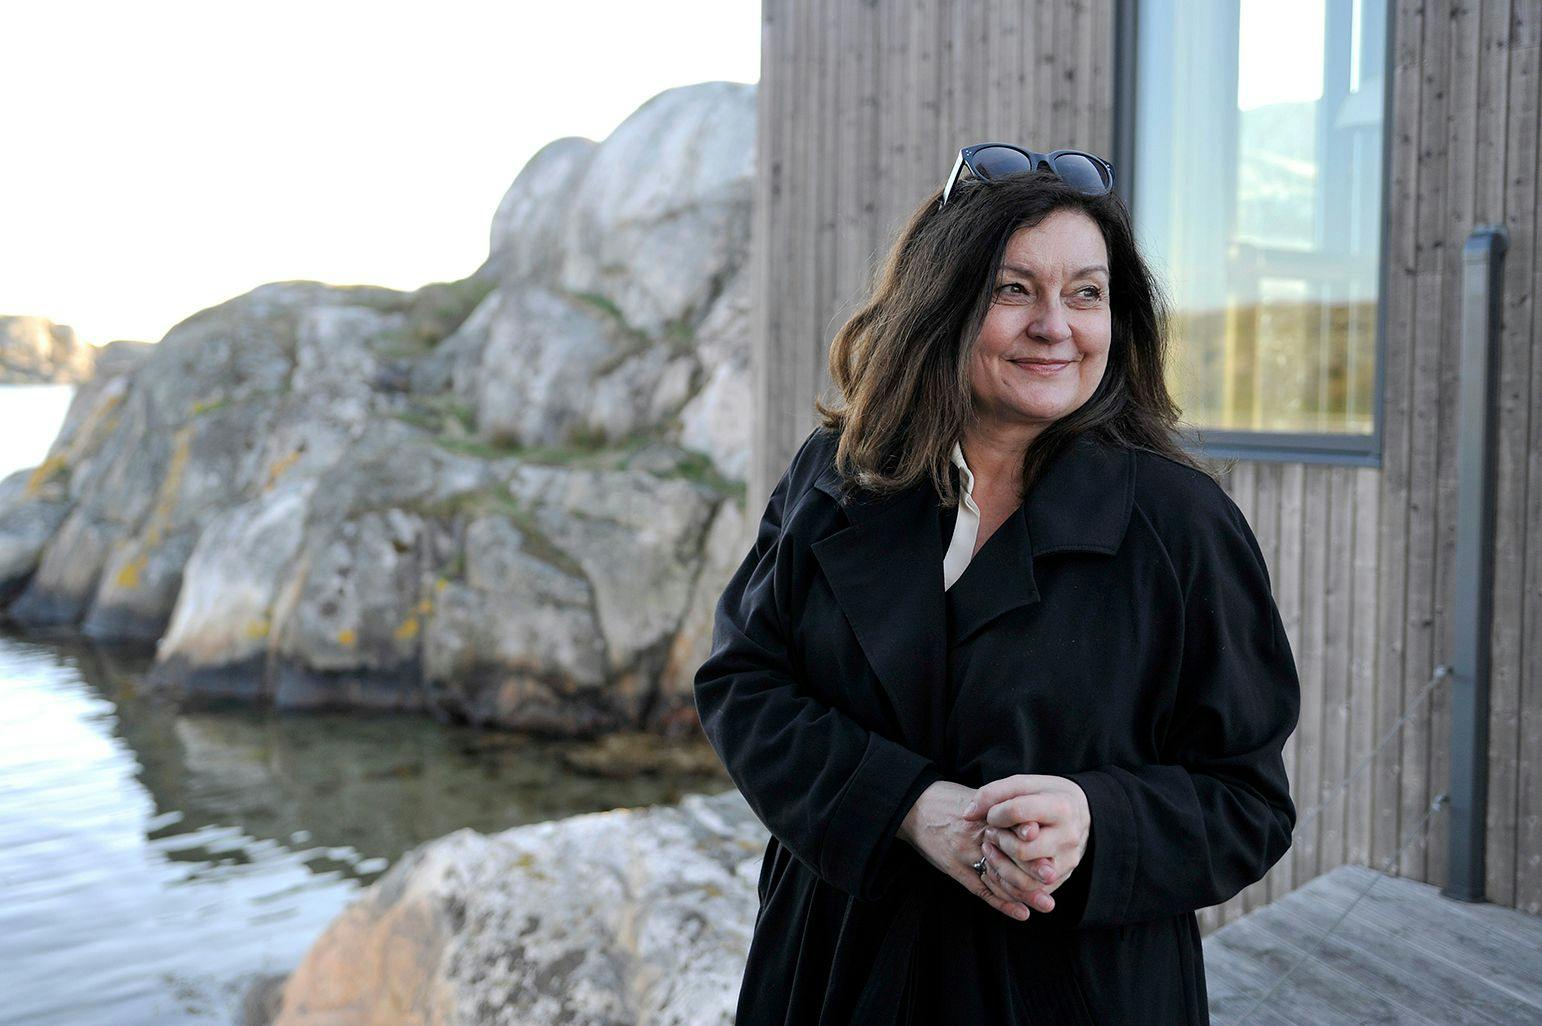 Museum director Bera Nordal